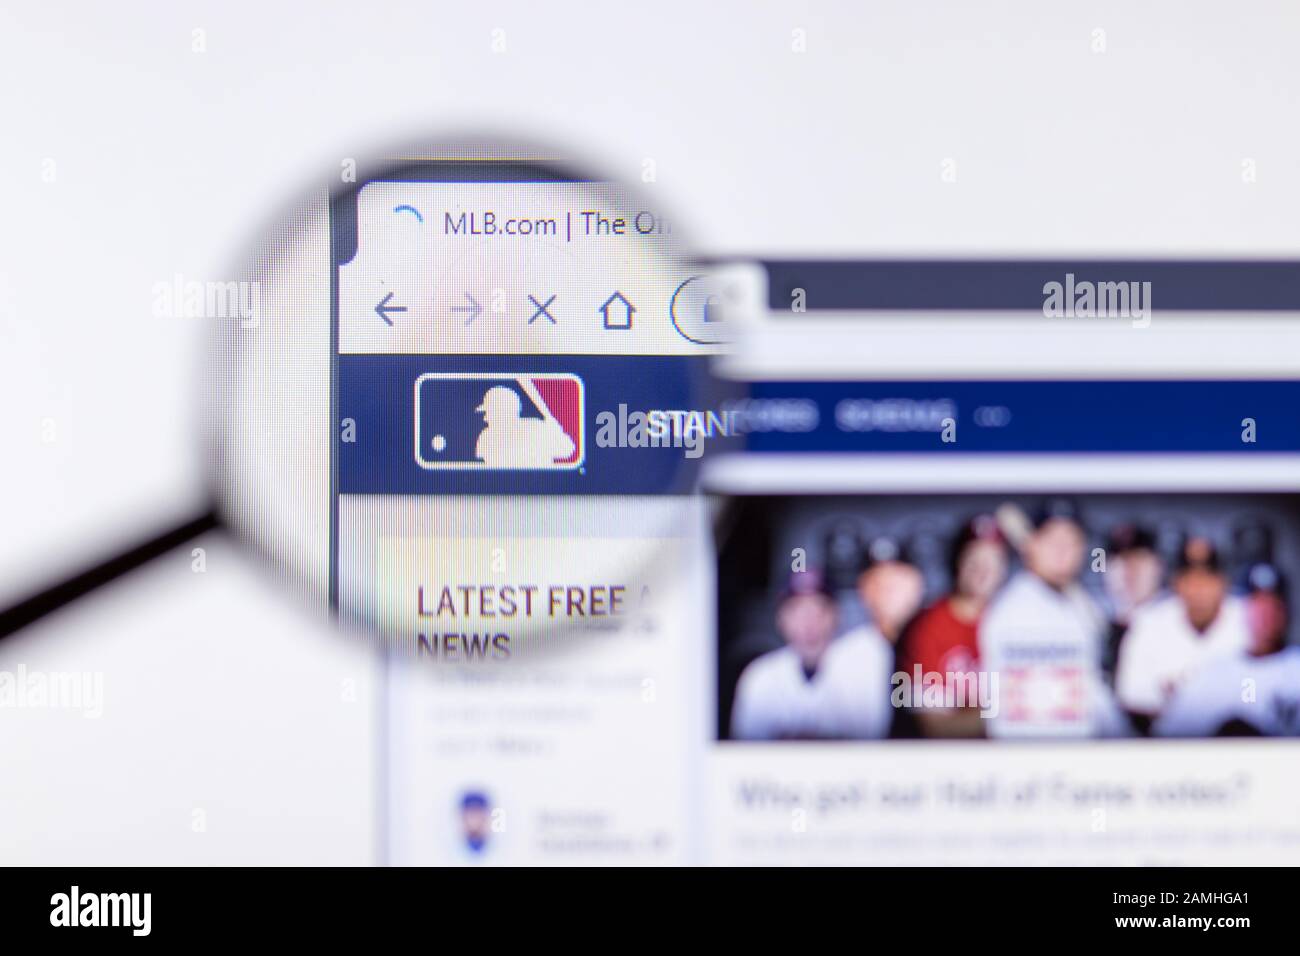 Saint-Pétersbourg, Russie - 10 janvier 2020: Page du site Web du MLB sur un écran d'ordinateur portable avec logo, éditorial illustratif Banque D'Images